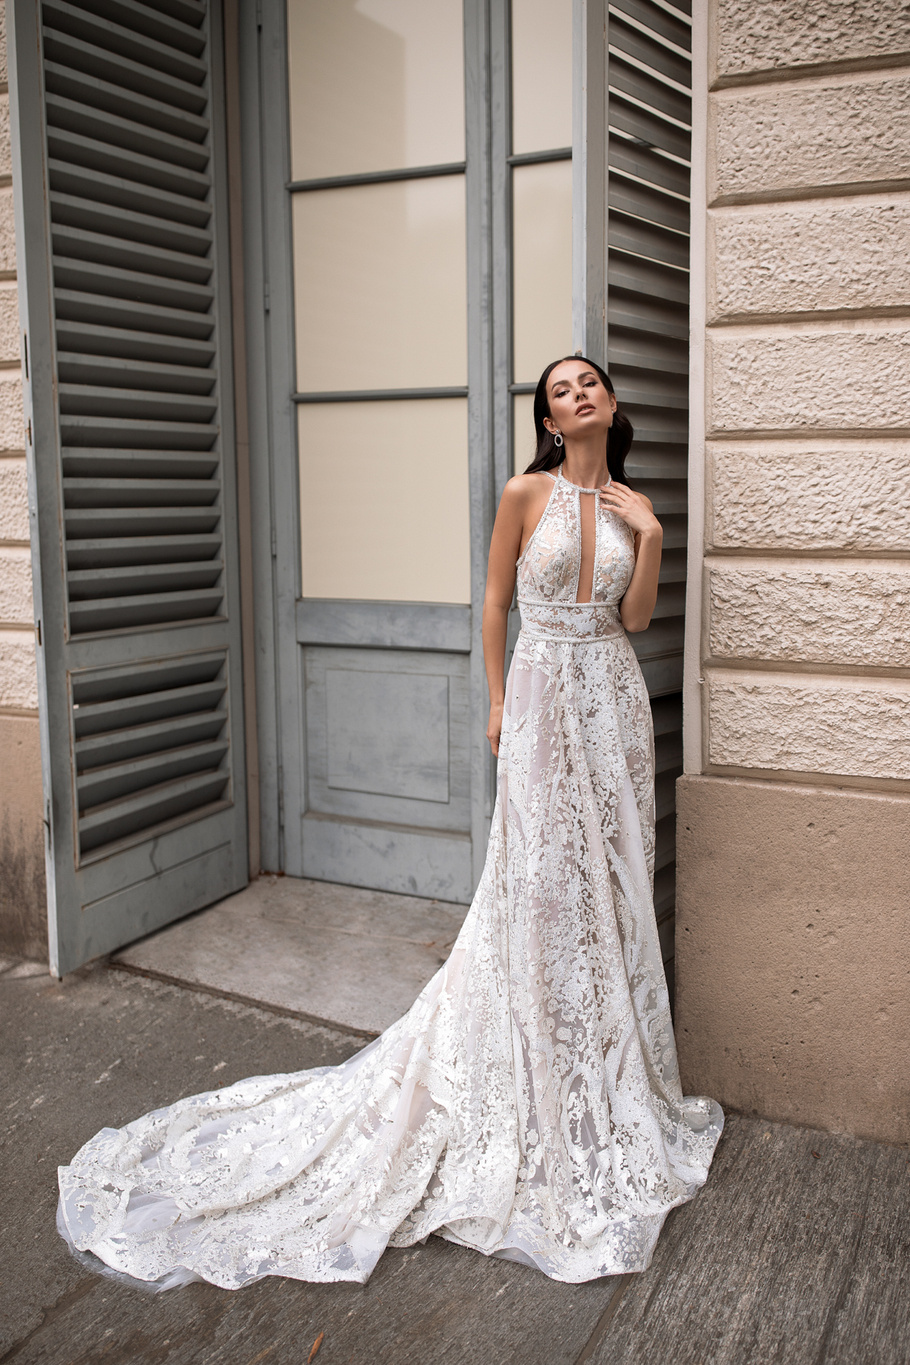 Свадебное платье Ариа от Ида Торез — купить в Самарае платье Ариа из коллекции Милано 2020